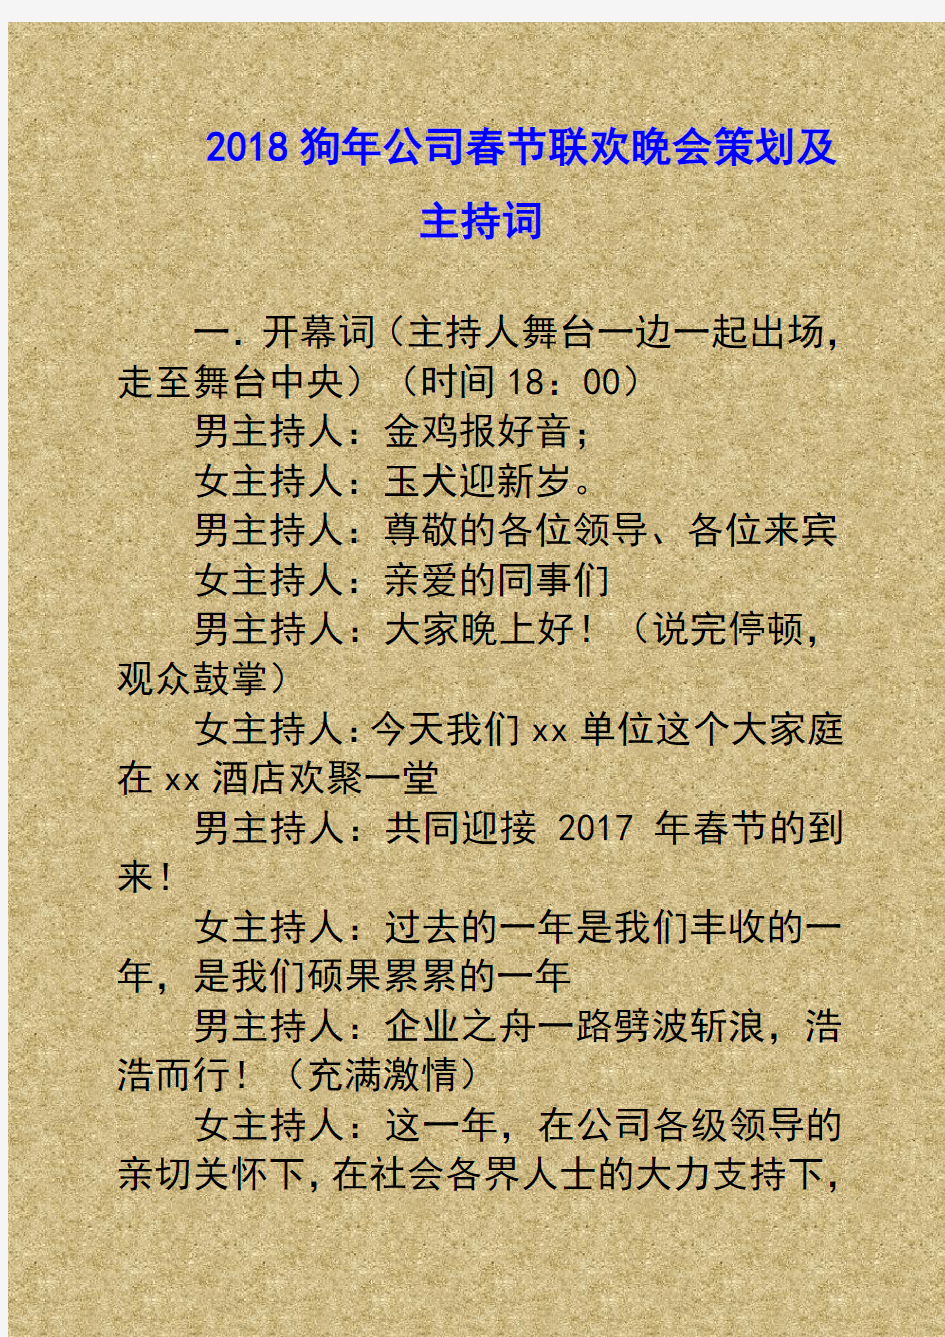 最新★2018狗年公司春节联欢晚会策划及主持词-完整版